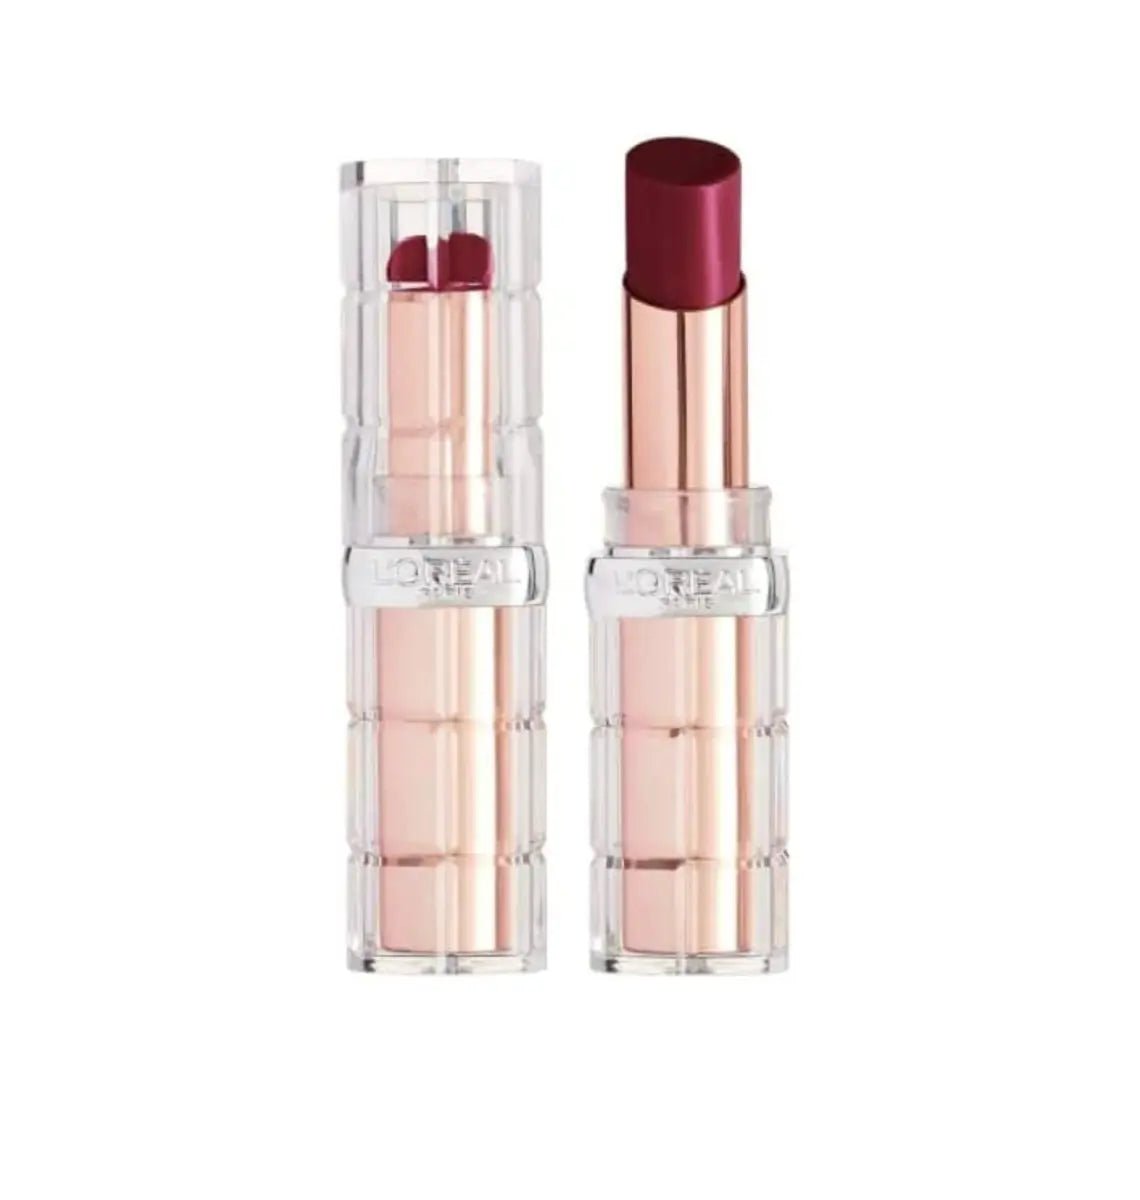 Image of L'Oreal Color Riche Shine Lipstick - Wild Fig Plump